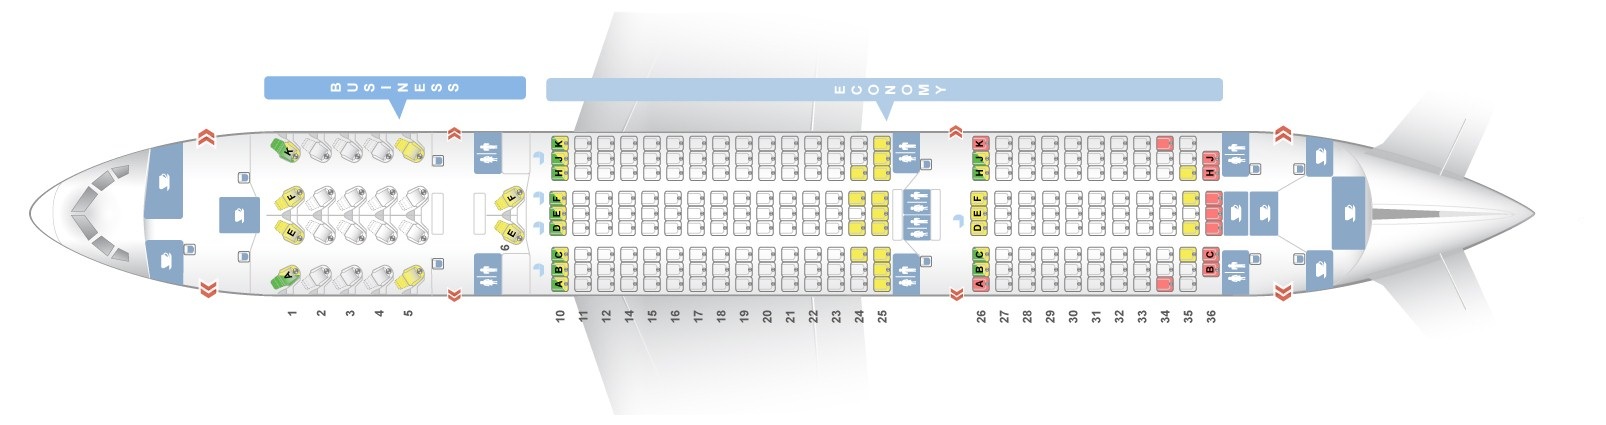 Boeing 787 Seating Chart Qatar Airways